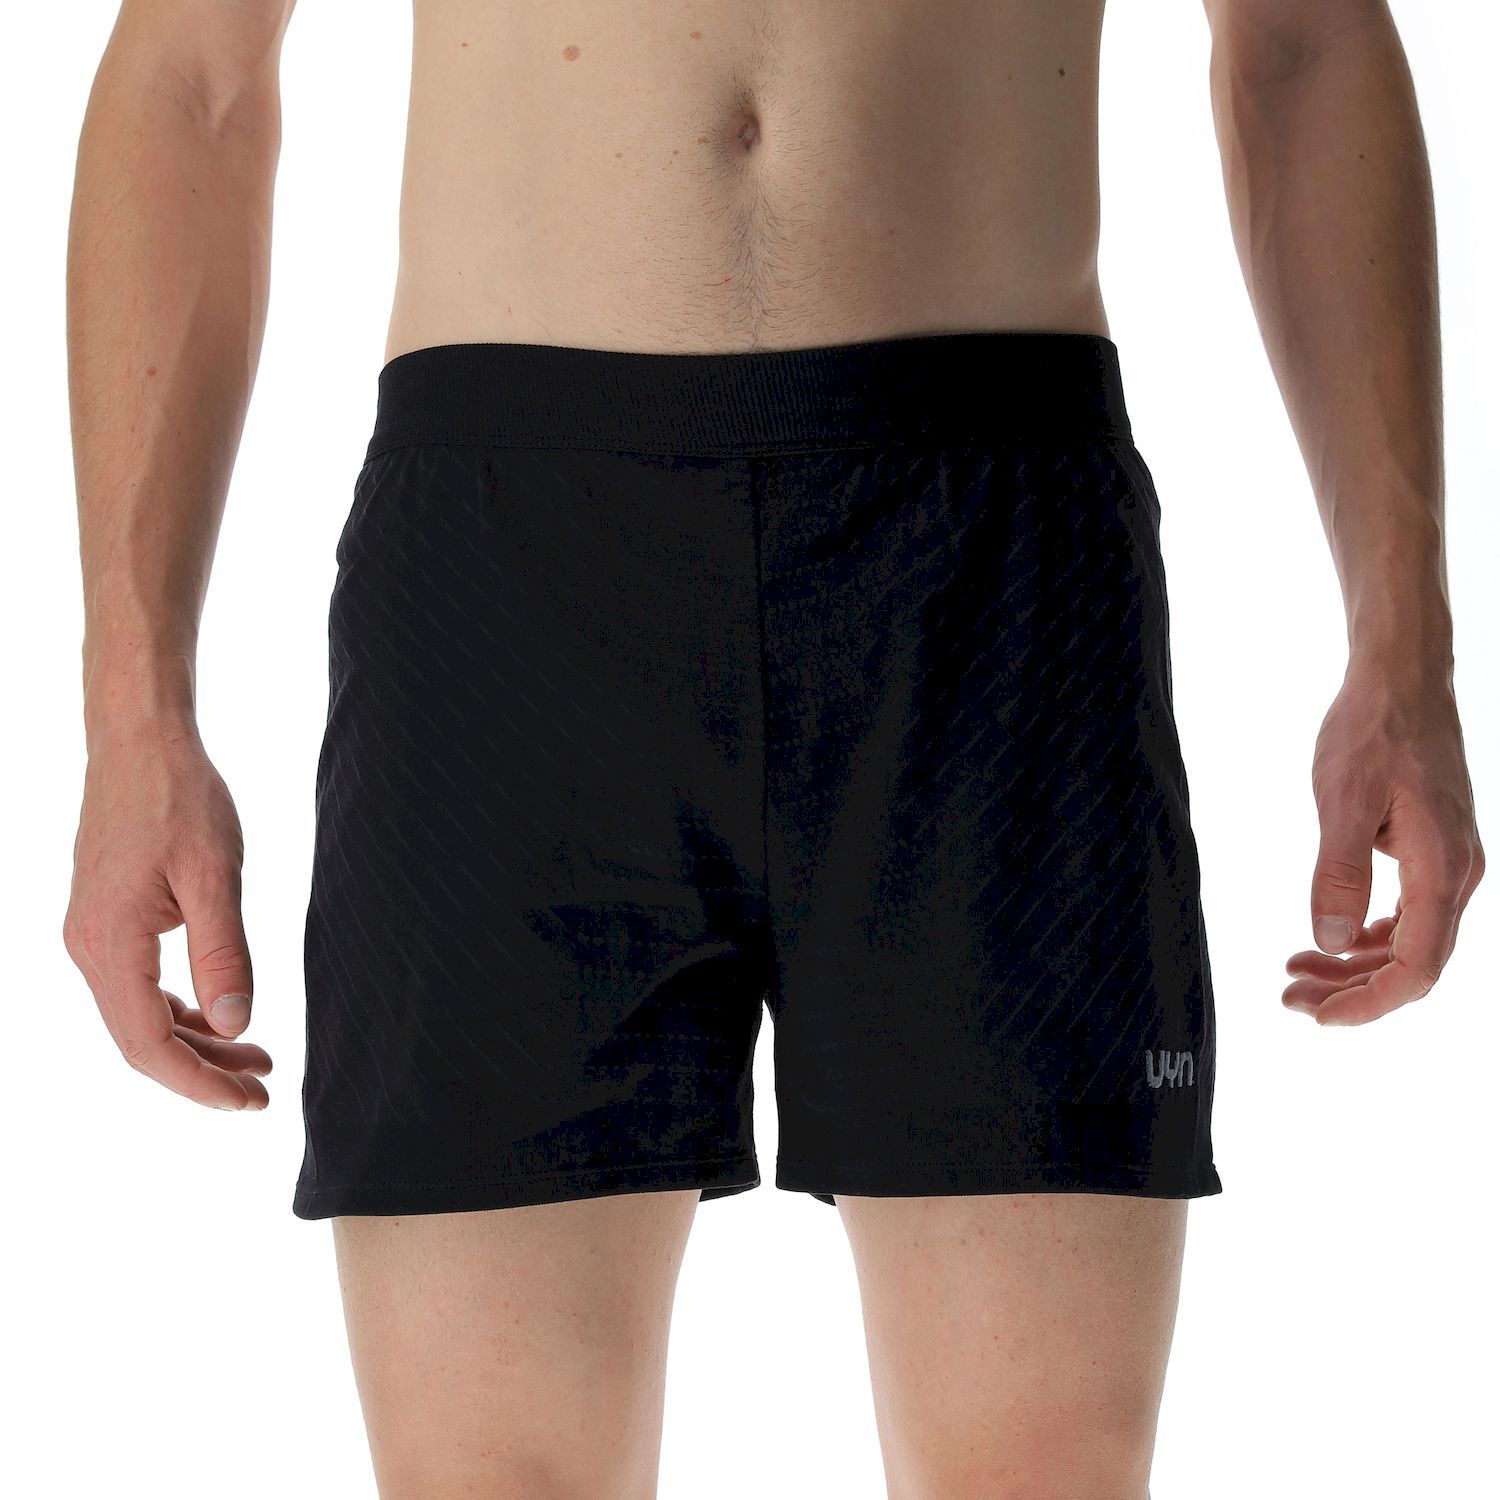 Uyn Running PB42 Ow Pants Short - Running shorts - Men's